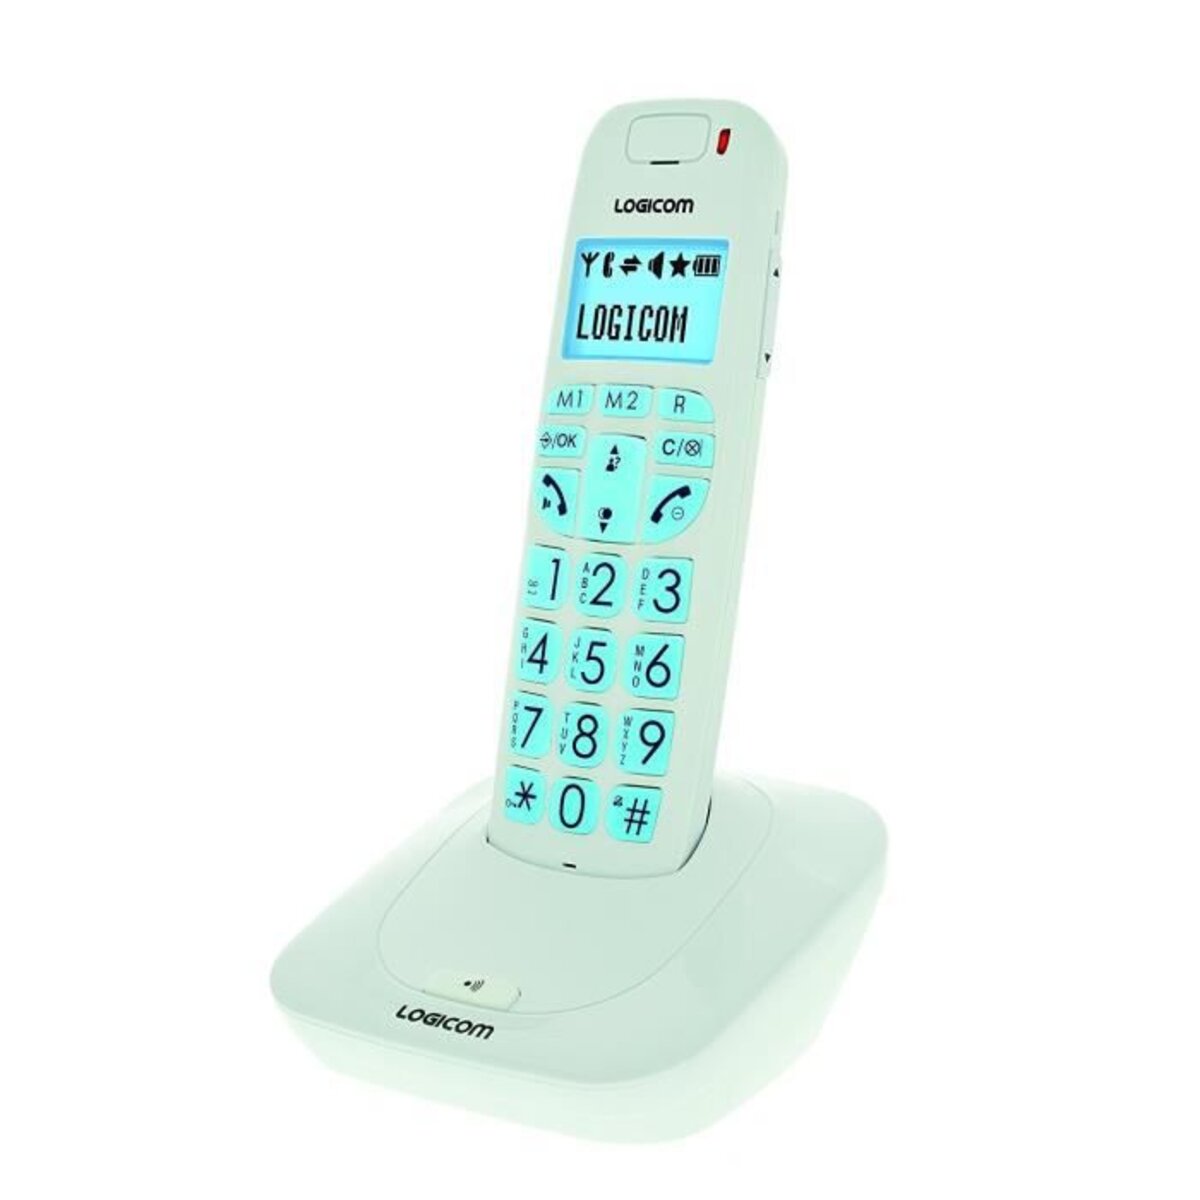 Logicom Confort 250 Blanc - Téléphone sans fil - Garantie 3 ans LDLC